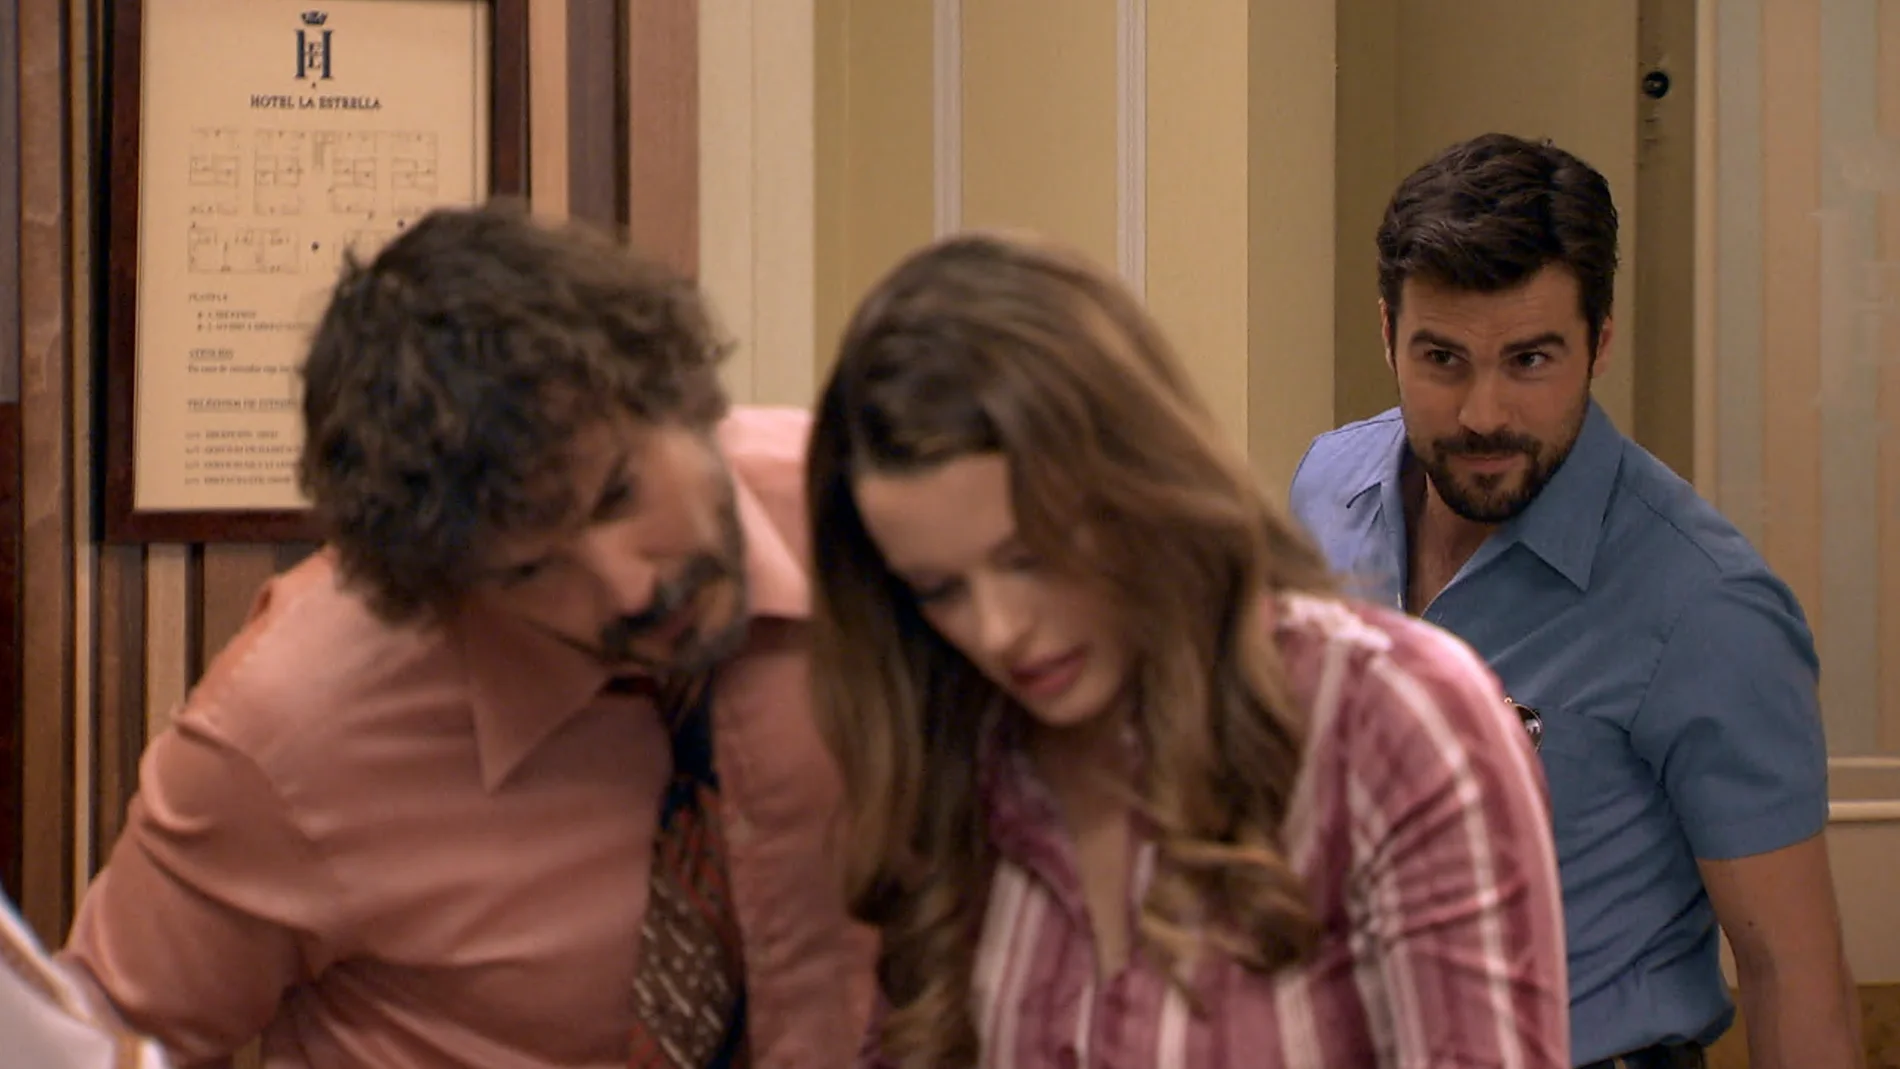 Lourdes y Guillermo aparecen en el hotel en busca y captura de la identidad falsa